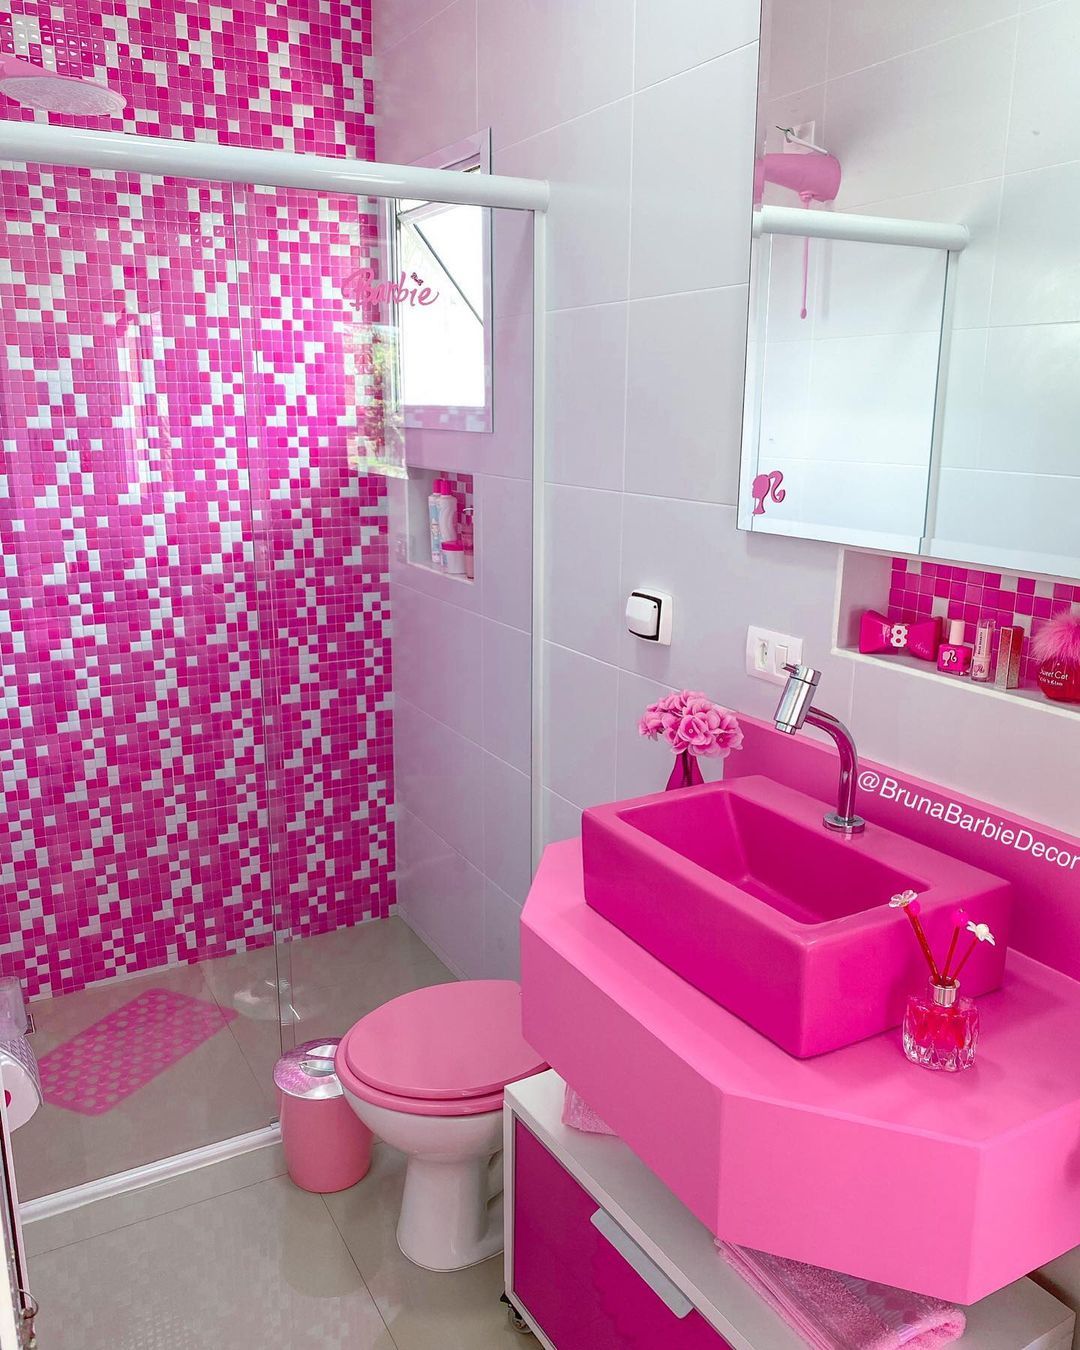 Dekorasi kamar mandi serba pink milik Bruna Barbie